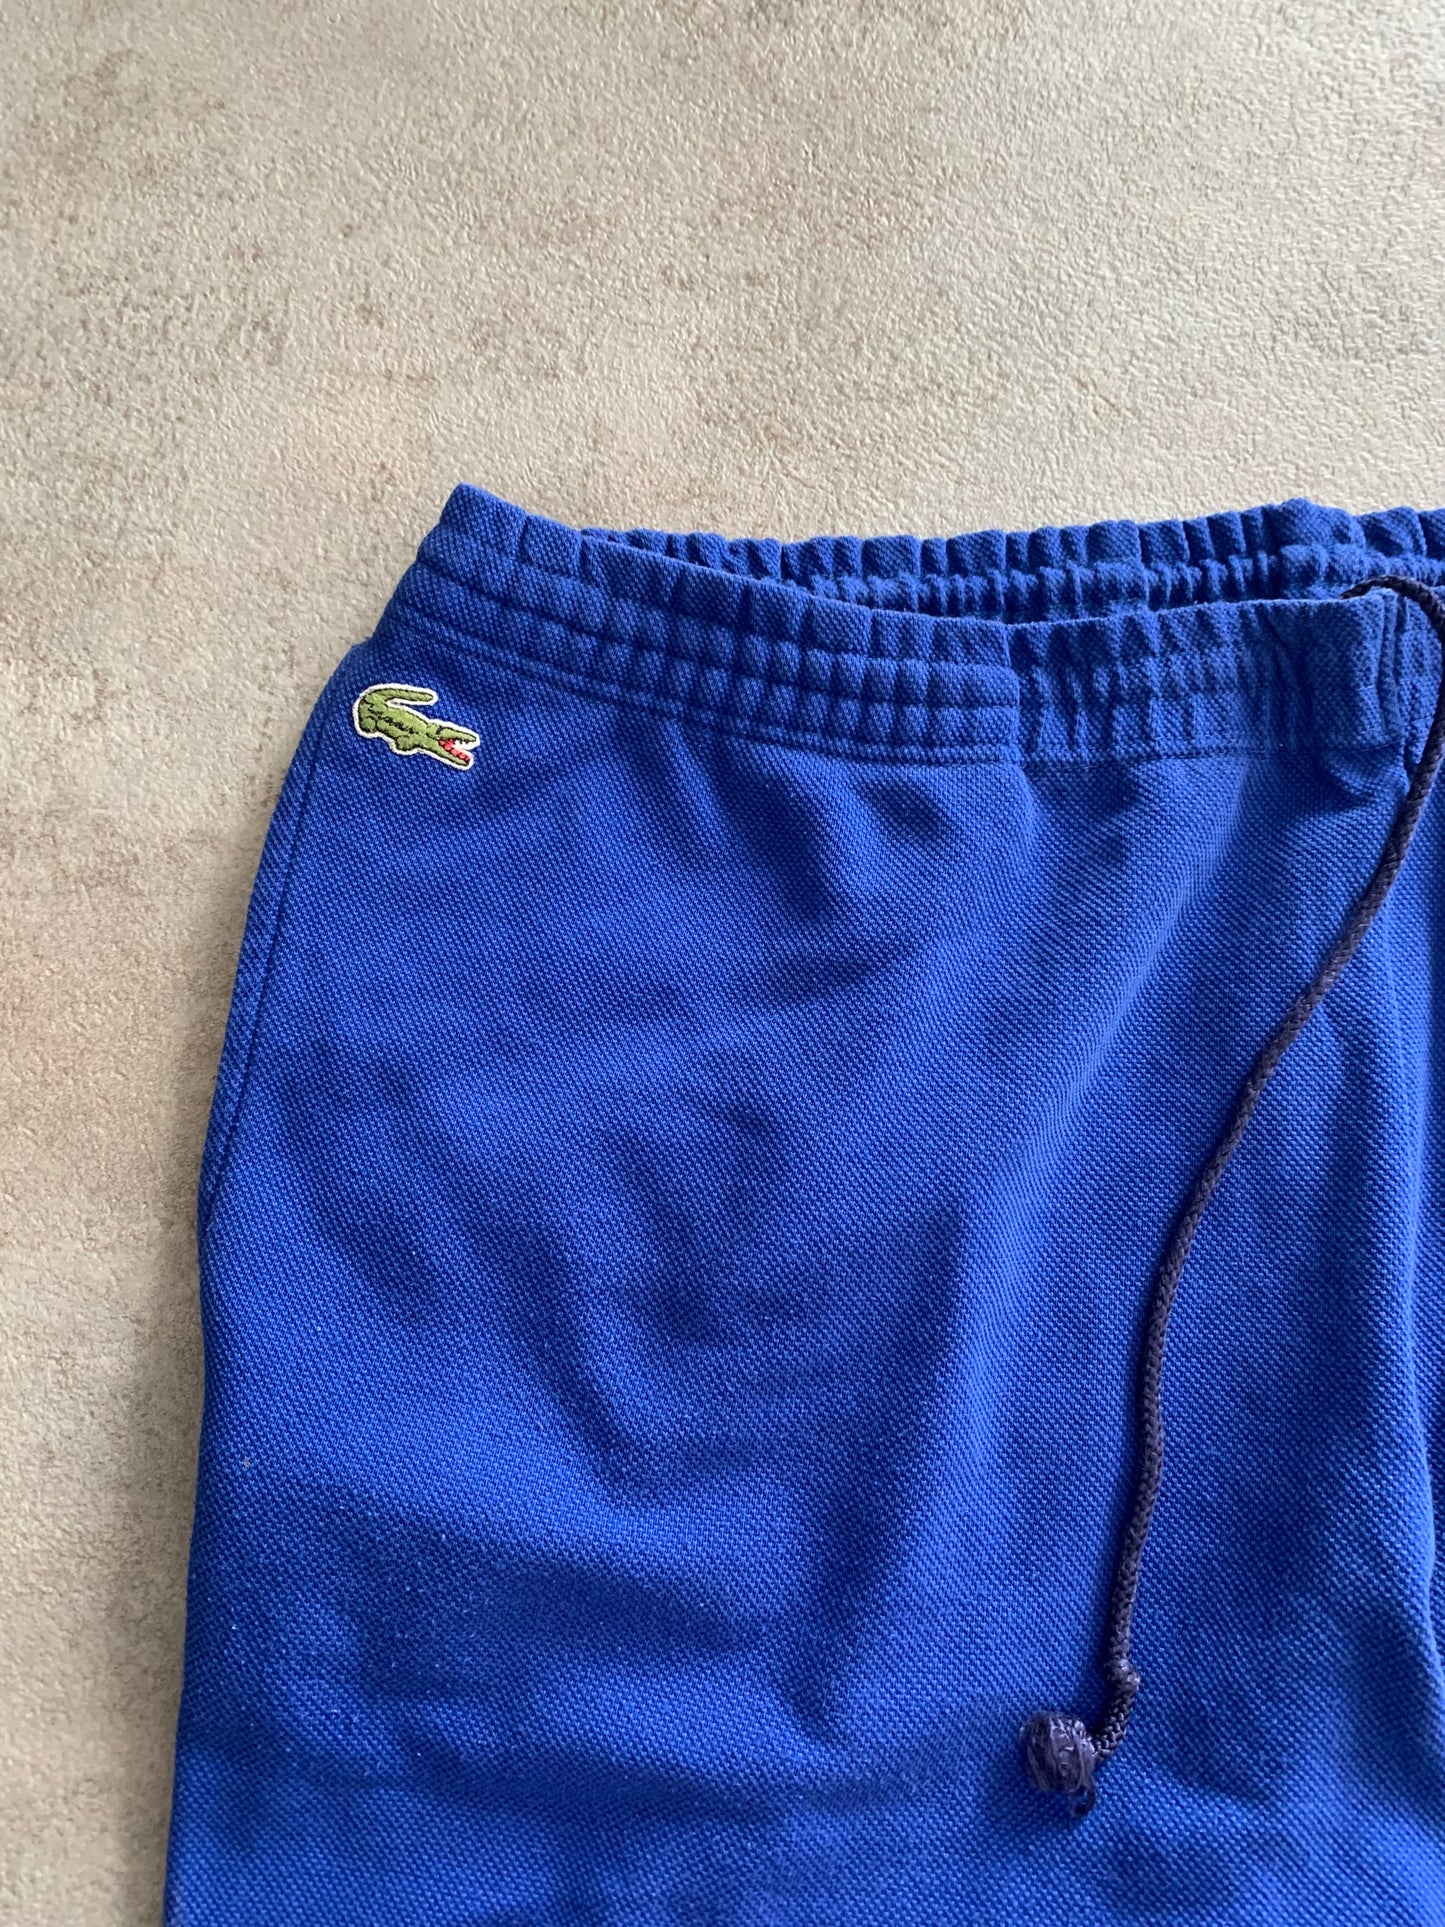 Pantalones Track Vintage Lacoste 90’s - L